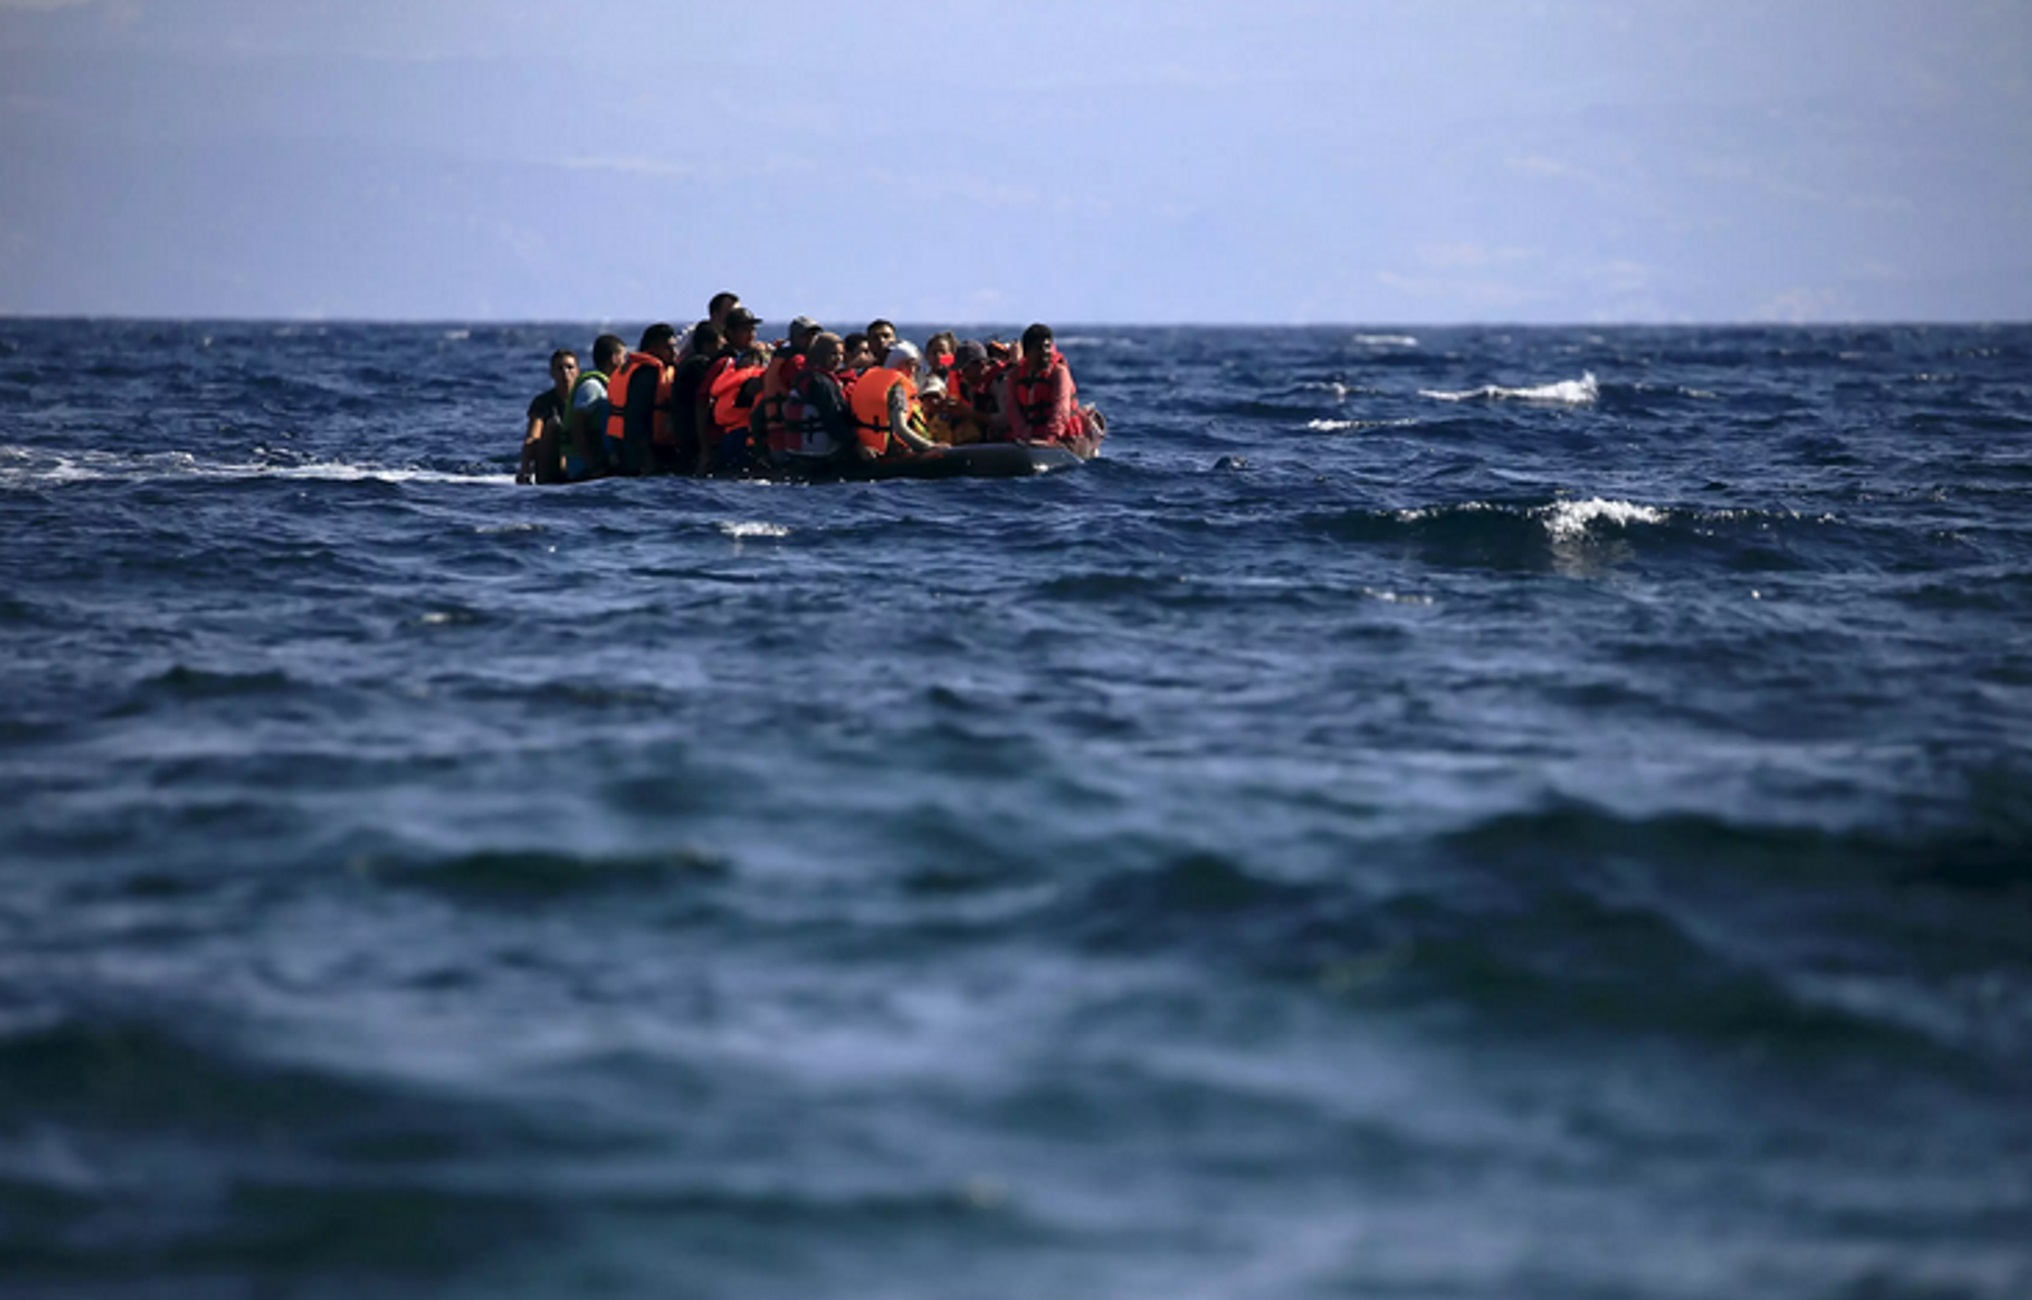 Ιταλία: Στόχος να δοθεί άδεια εισόδου σε 500.000 νόμιμους μετανάστες